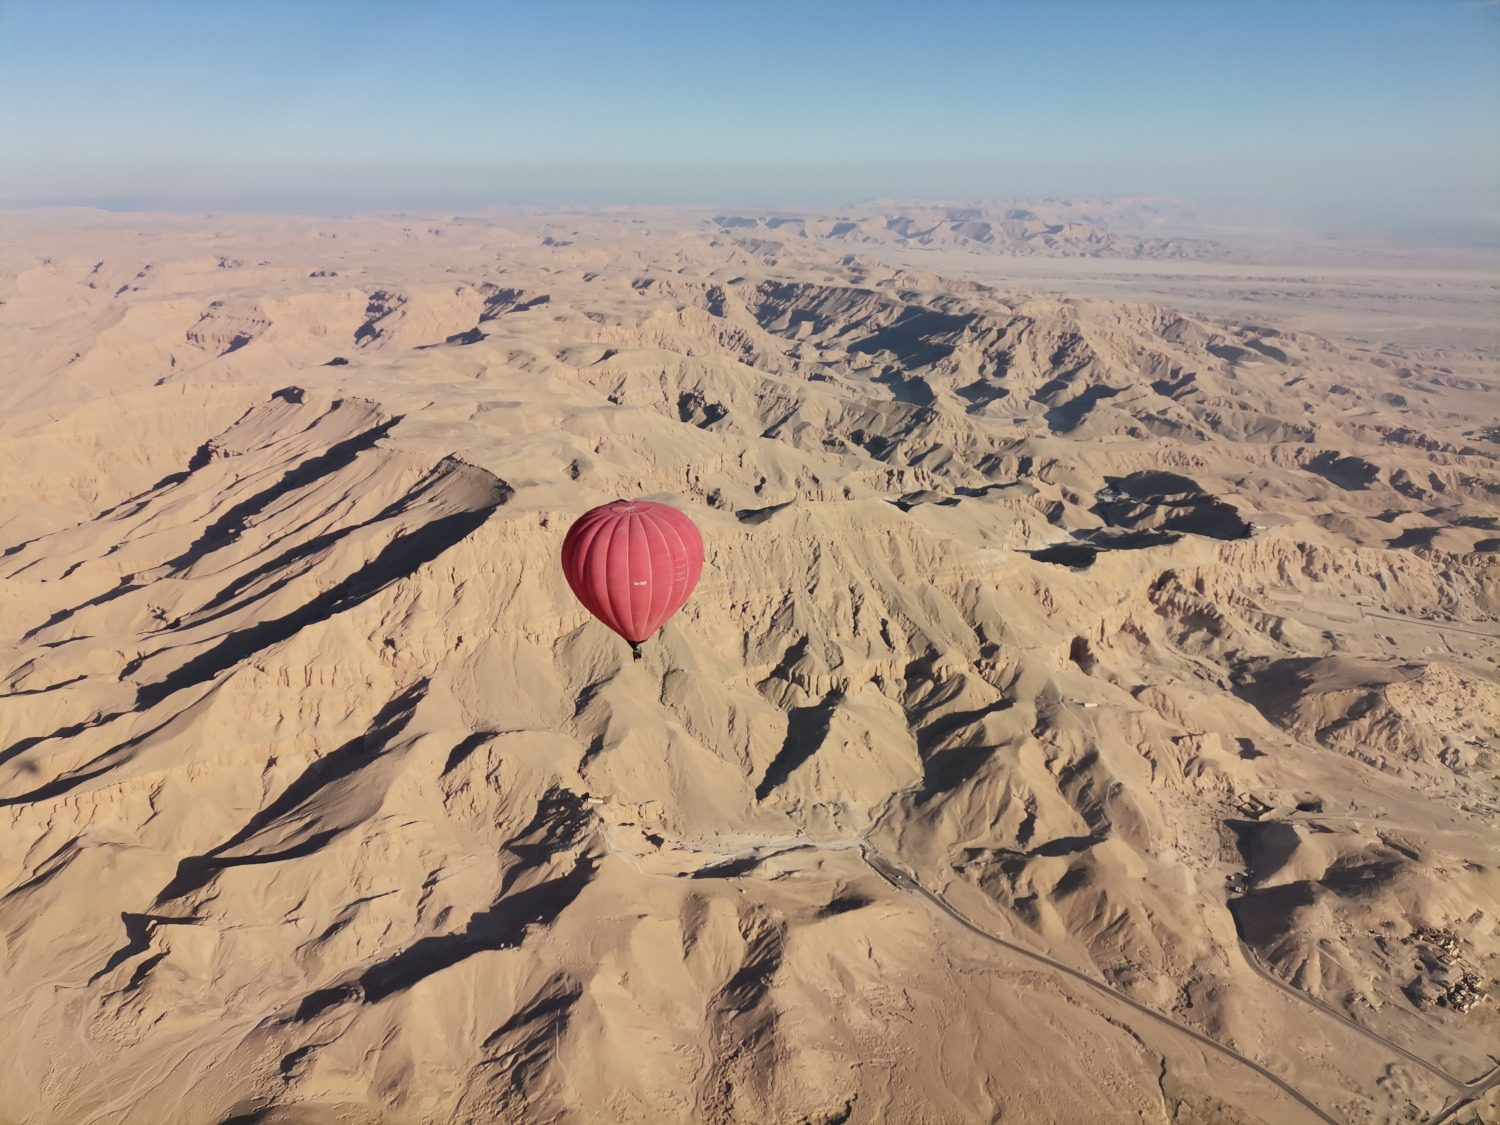 
Luxor hot-air balloon trip